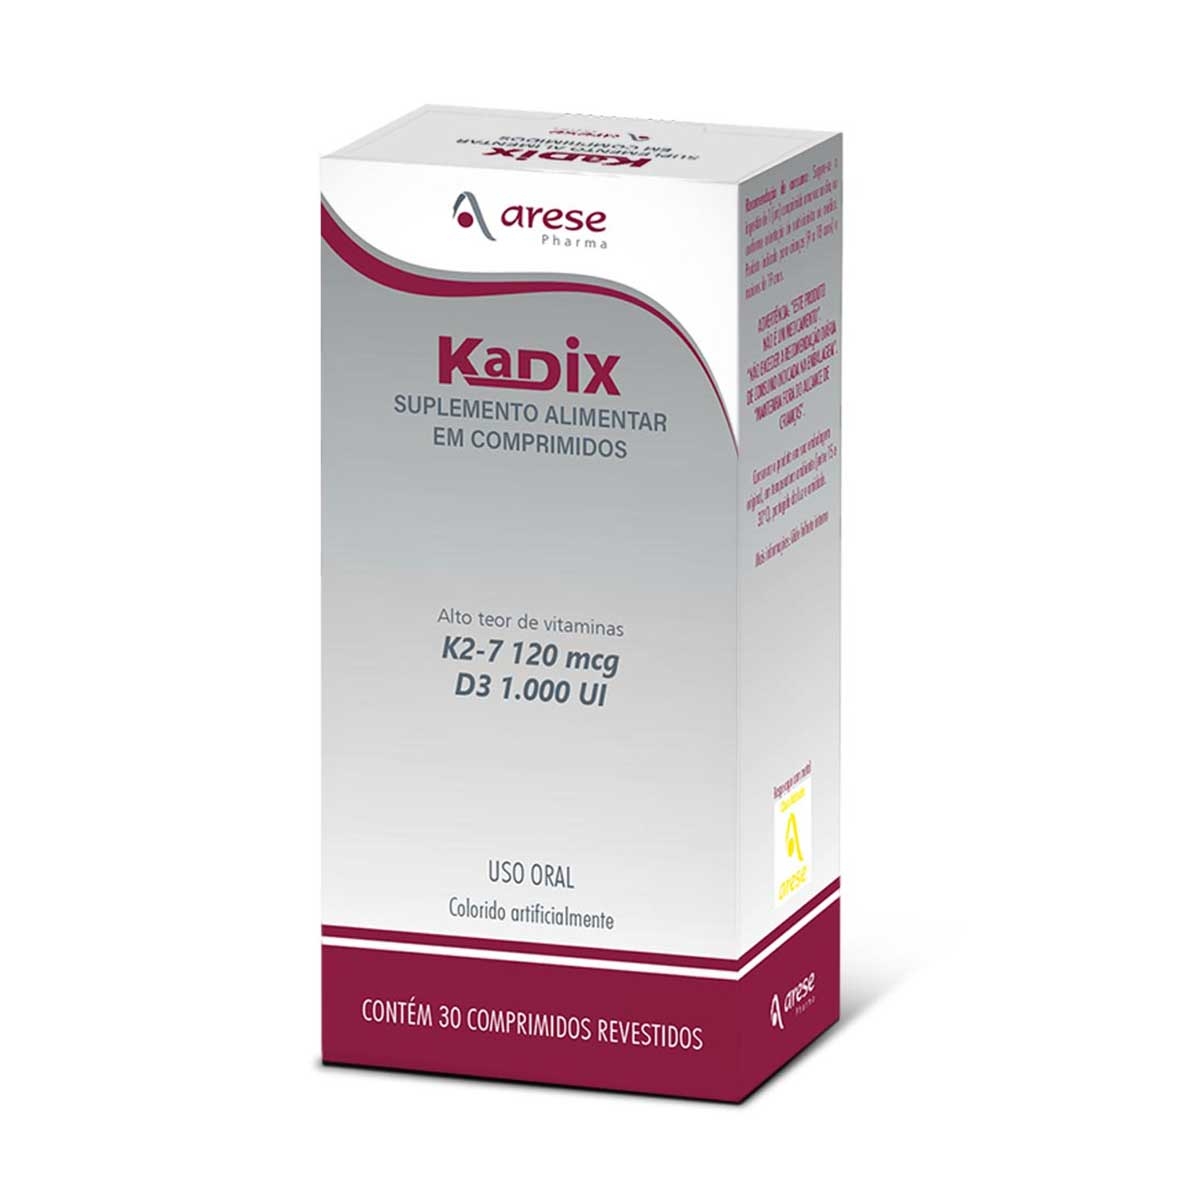 Kadix 1000UI + 120mcg Suplemento Alimentar de Vitaminas com 30 comprimidos